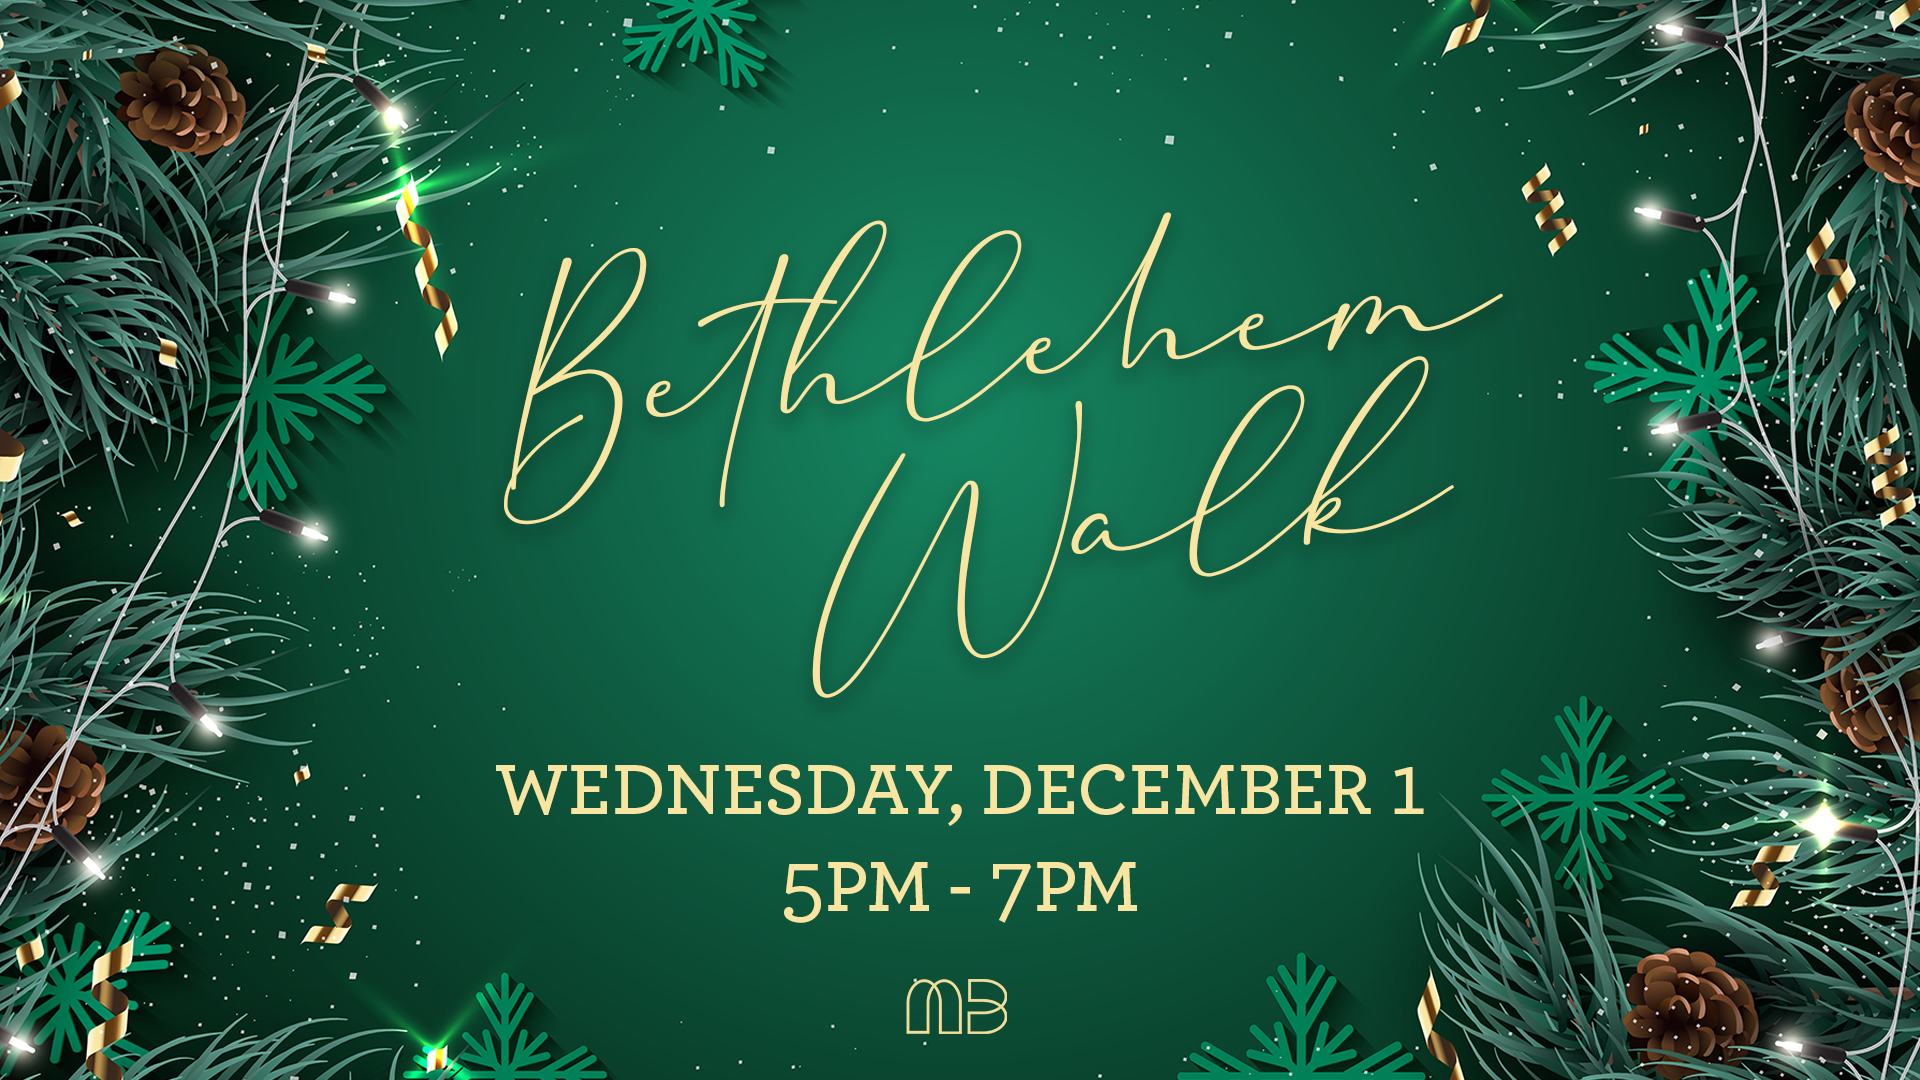 Bethlehem Walk